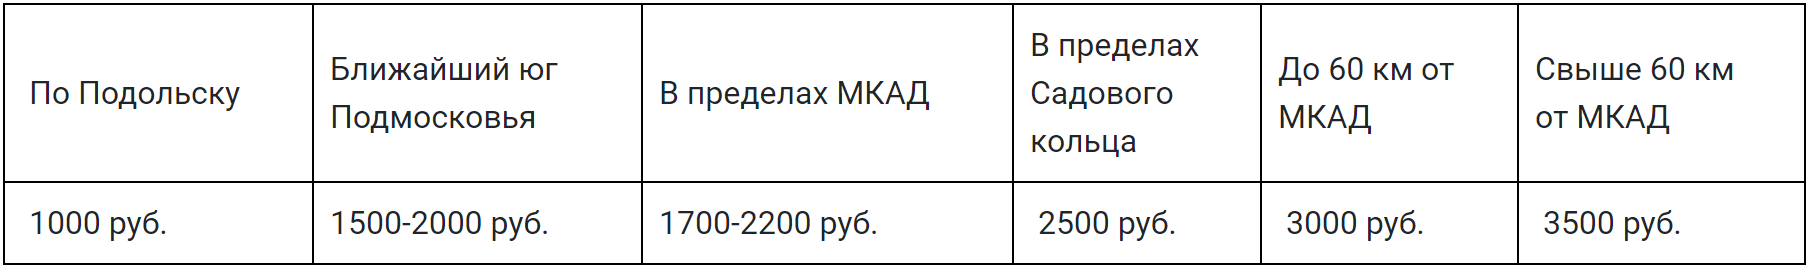 Продажа газовых баллонов с доставкой в Москве ➤ Баллоны от 150 руб